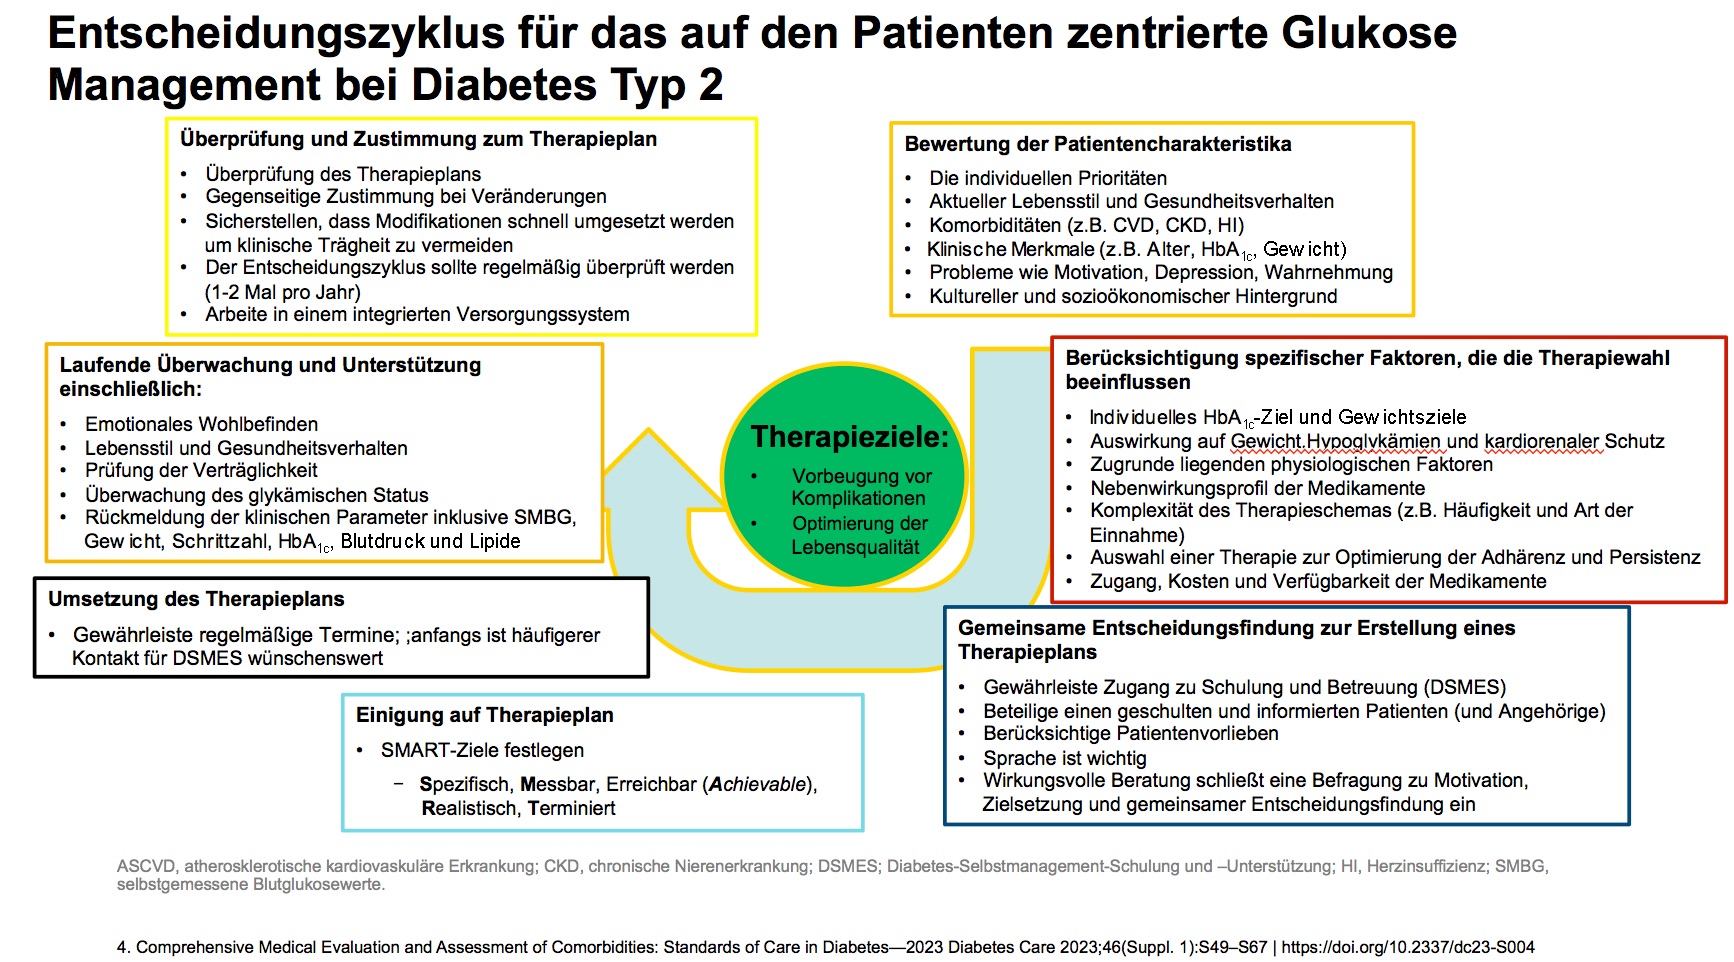 Entscheidungszyklus für das auf den Patienten zentrierte Glukose-Management bei Diabetes Typ 2